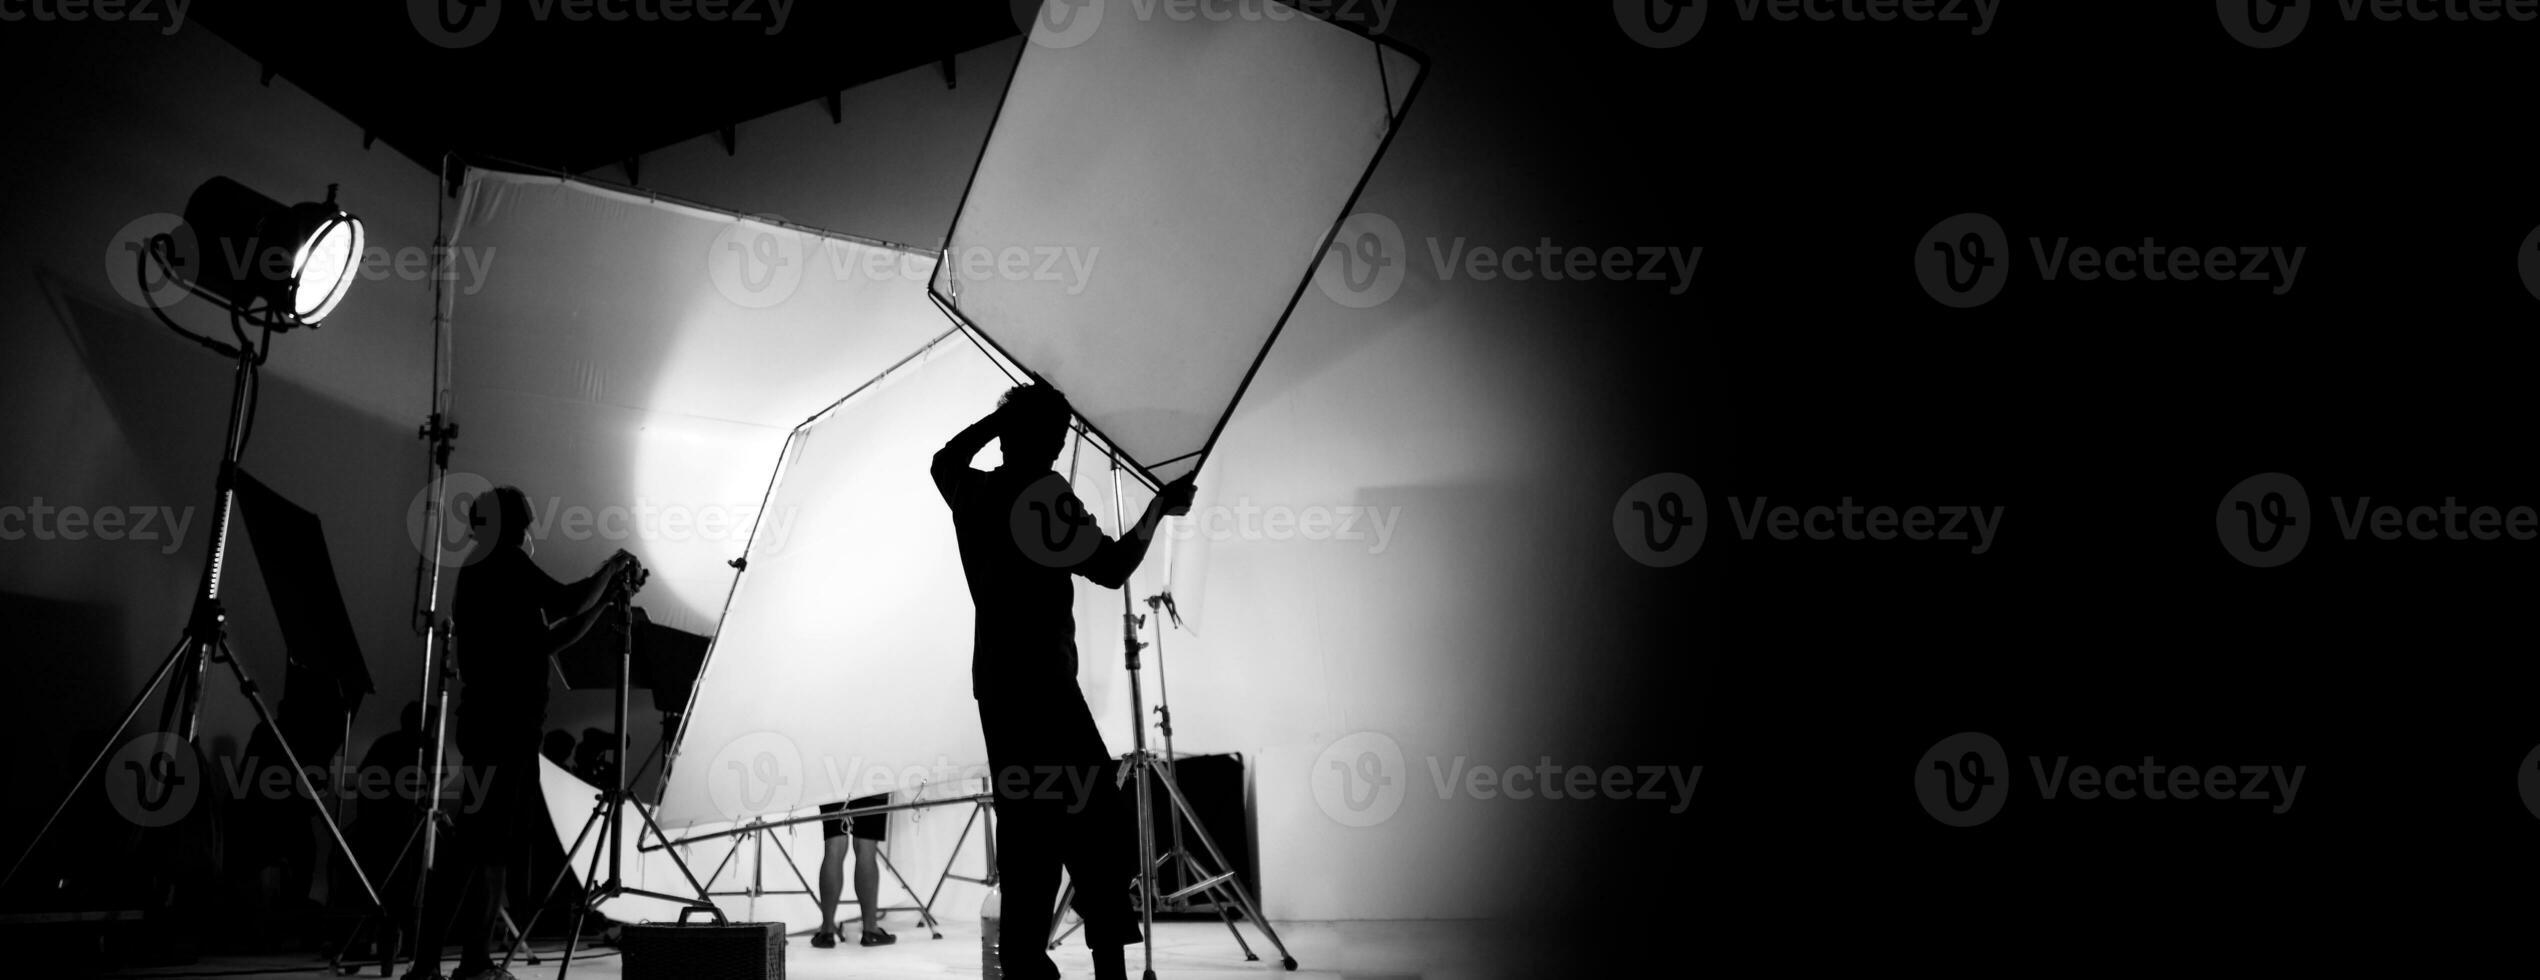 silhouet van video productie achter de scènes of b rollen of maken van TV reclame film dat film bemanning team licht man en cameraman werken samen met regisseur in groot studio met pro uitrustingen foto